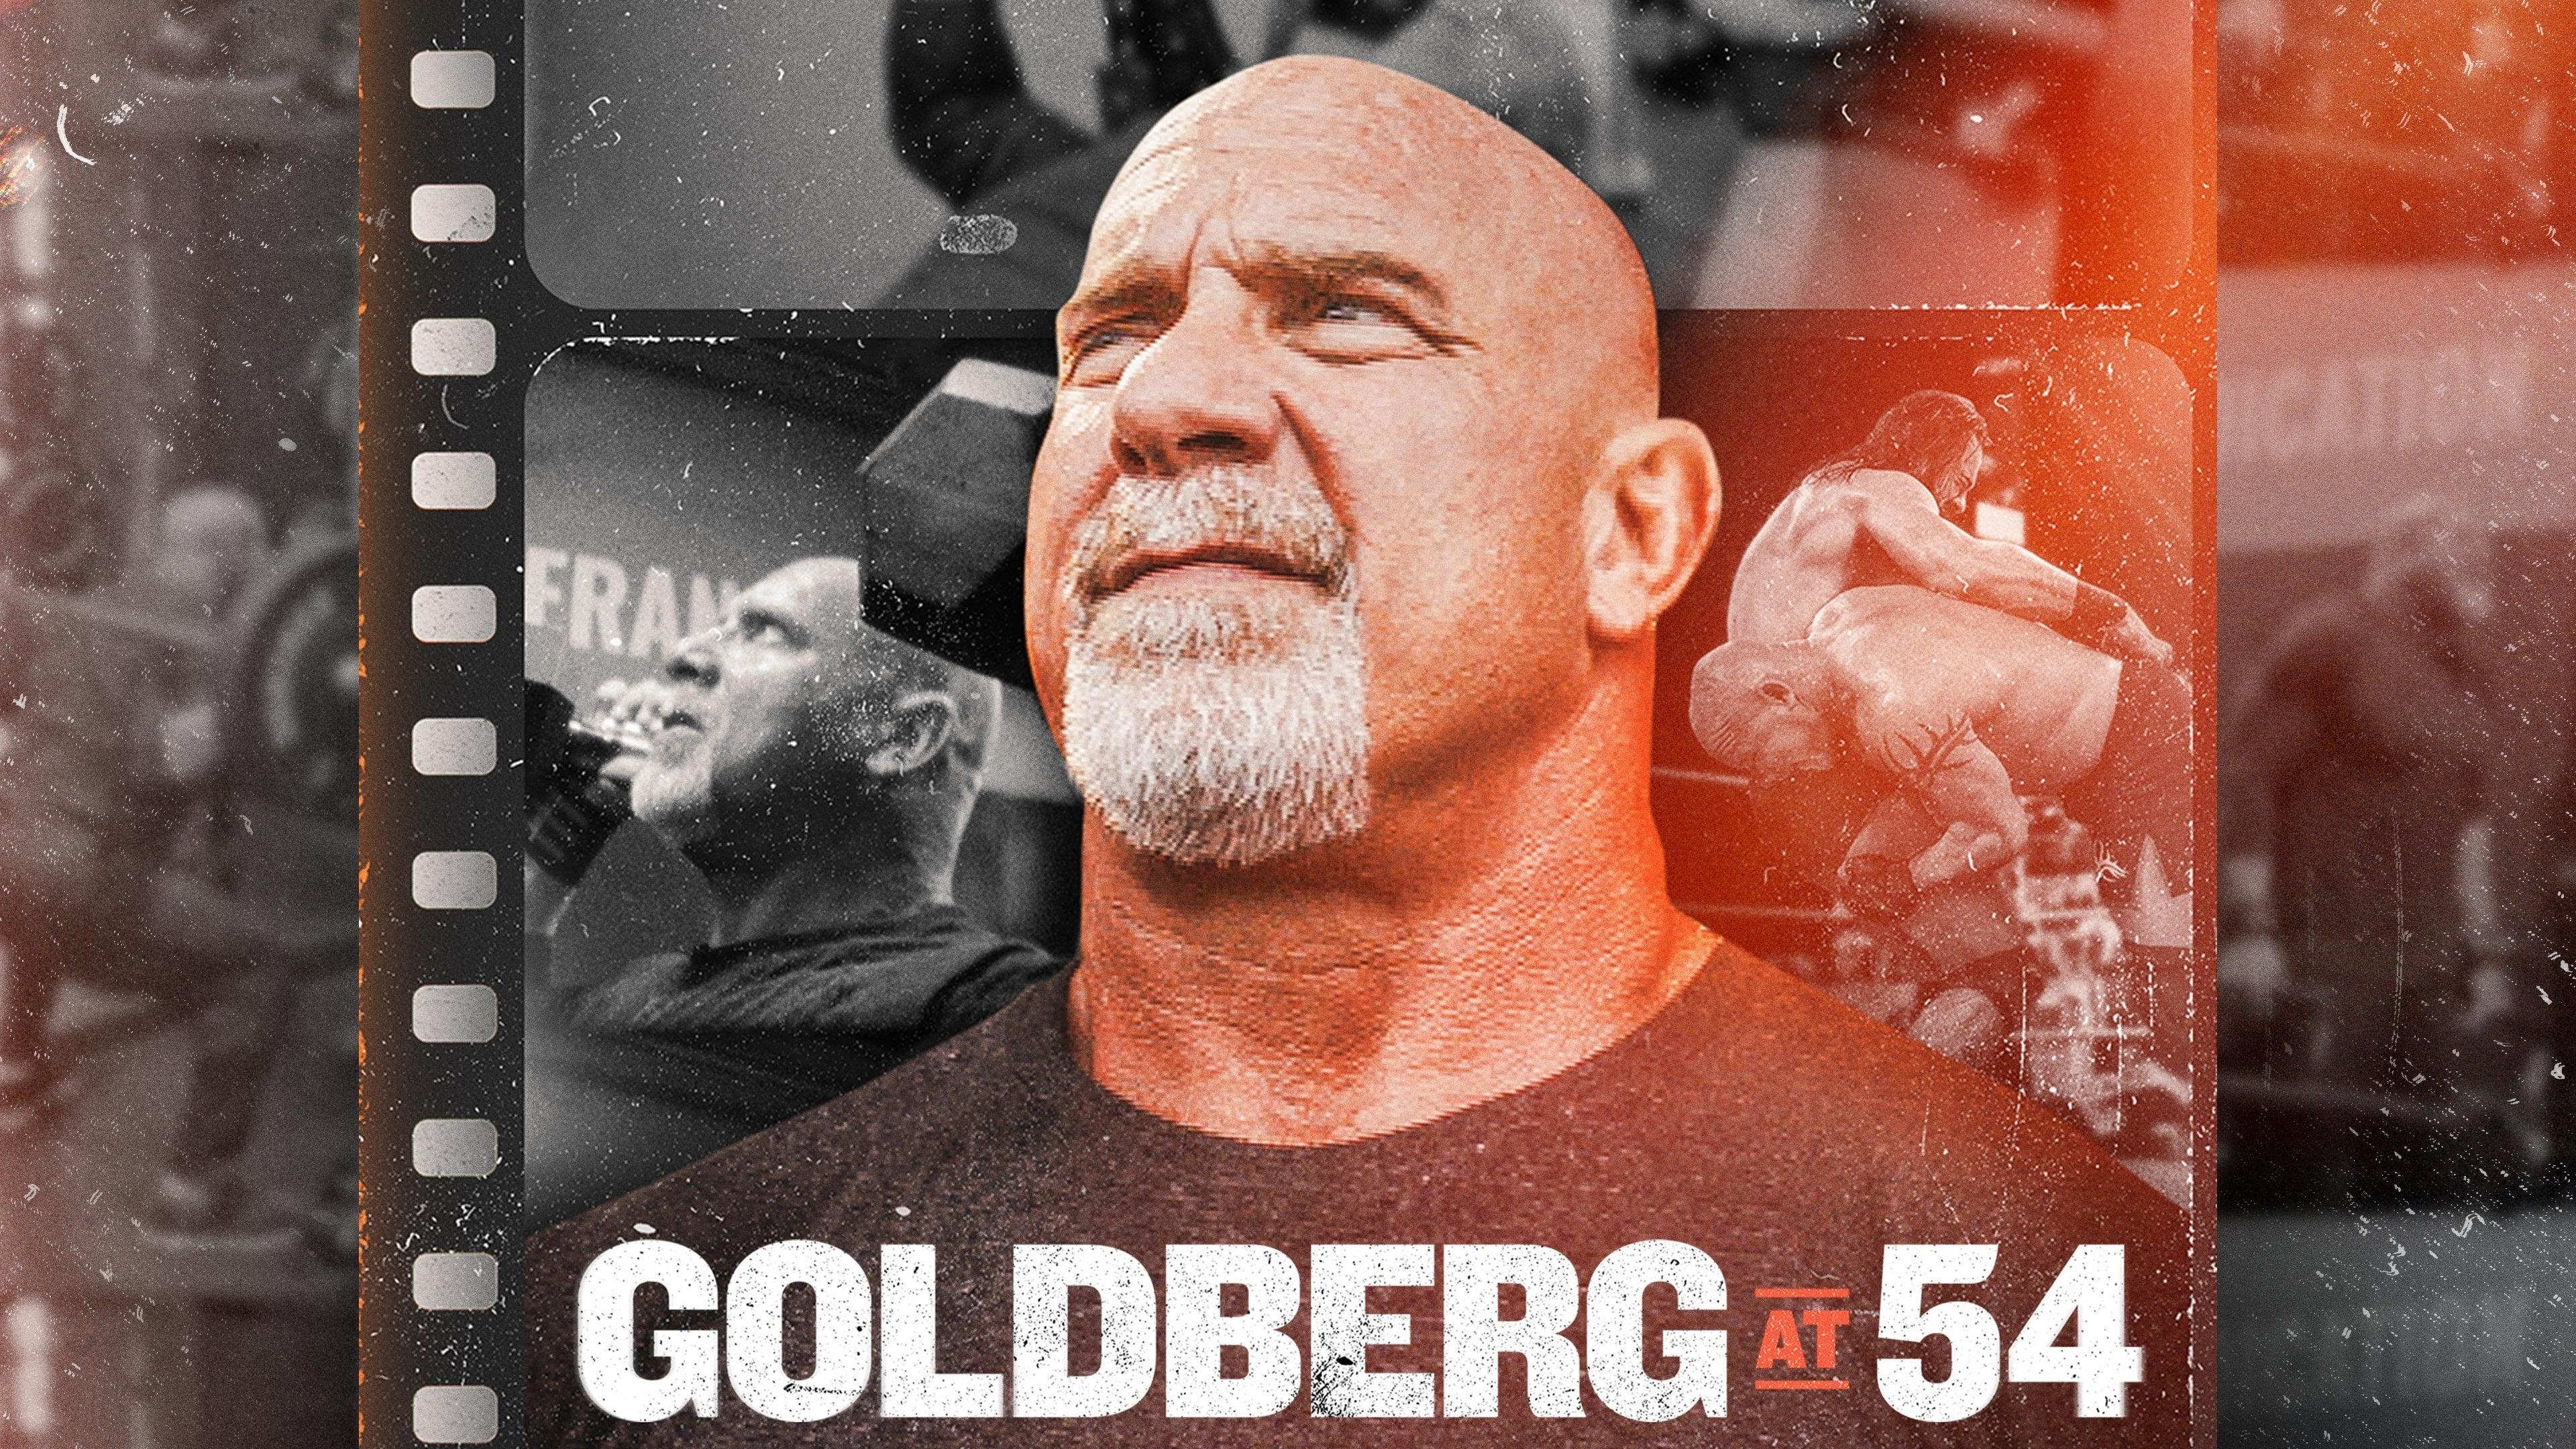 Goldberg at 54 backdrop